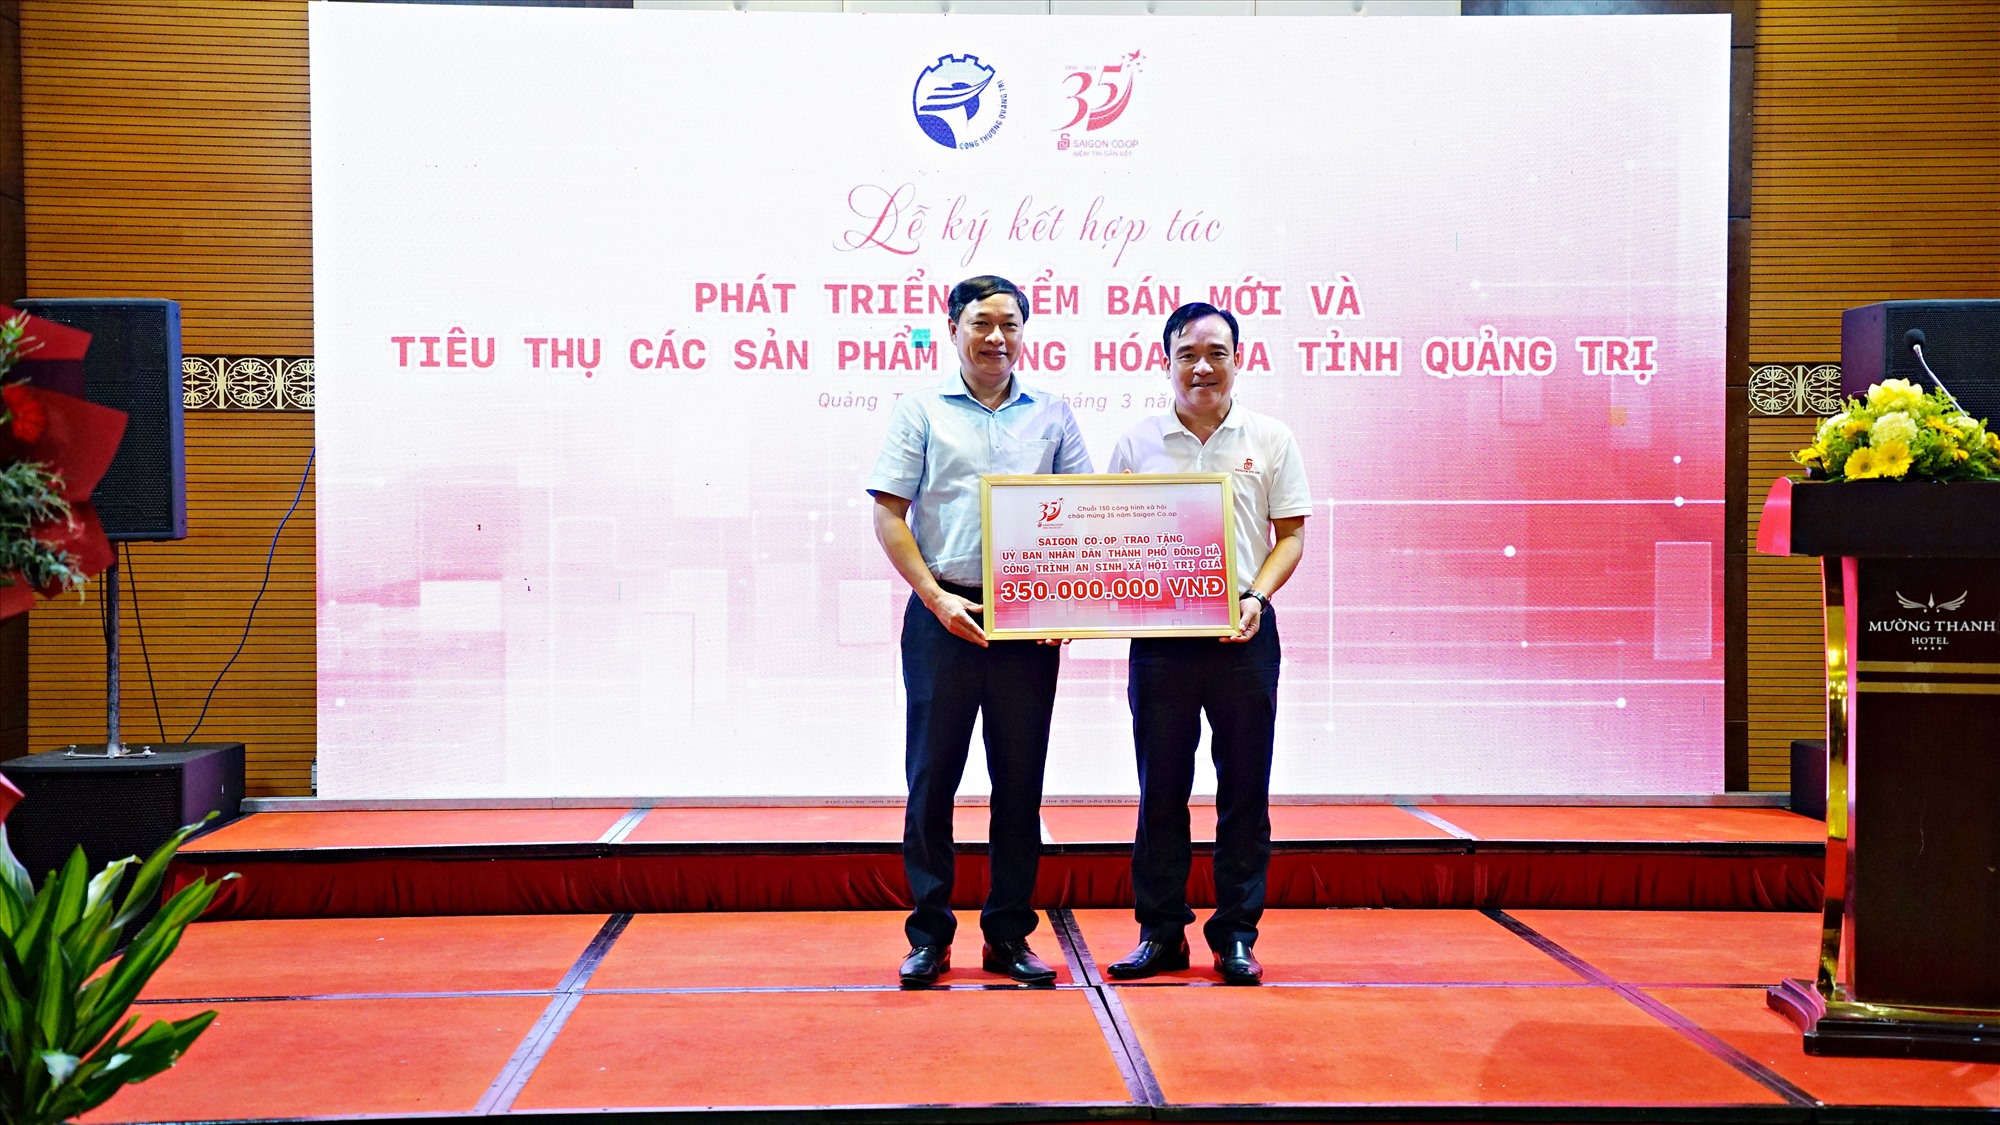 Đại diện Saigon Co.op trao tặng UBND thành phố Đông Hà một công trình an sinh xã hội trị giá 350 triệu đồng - Ảnh: L.A